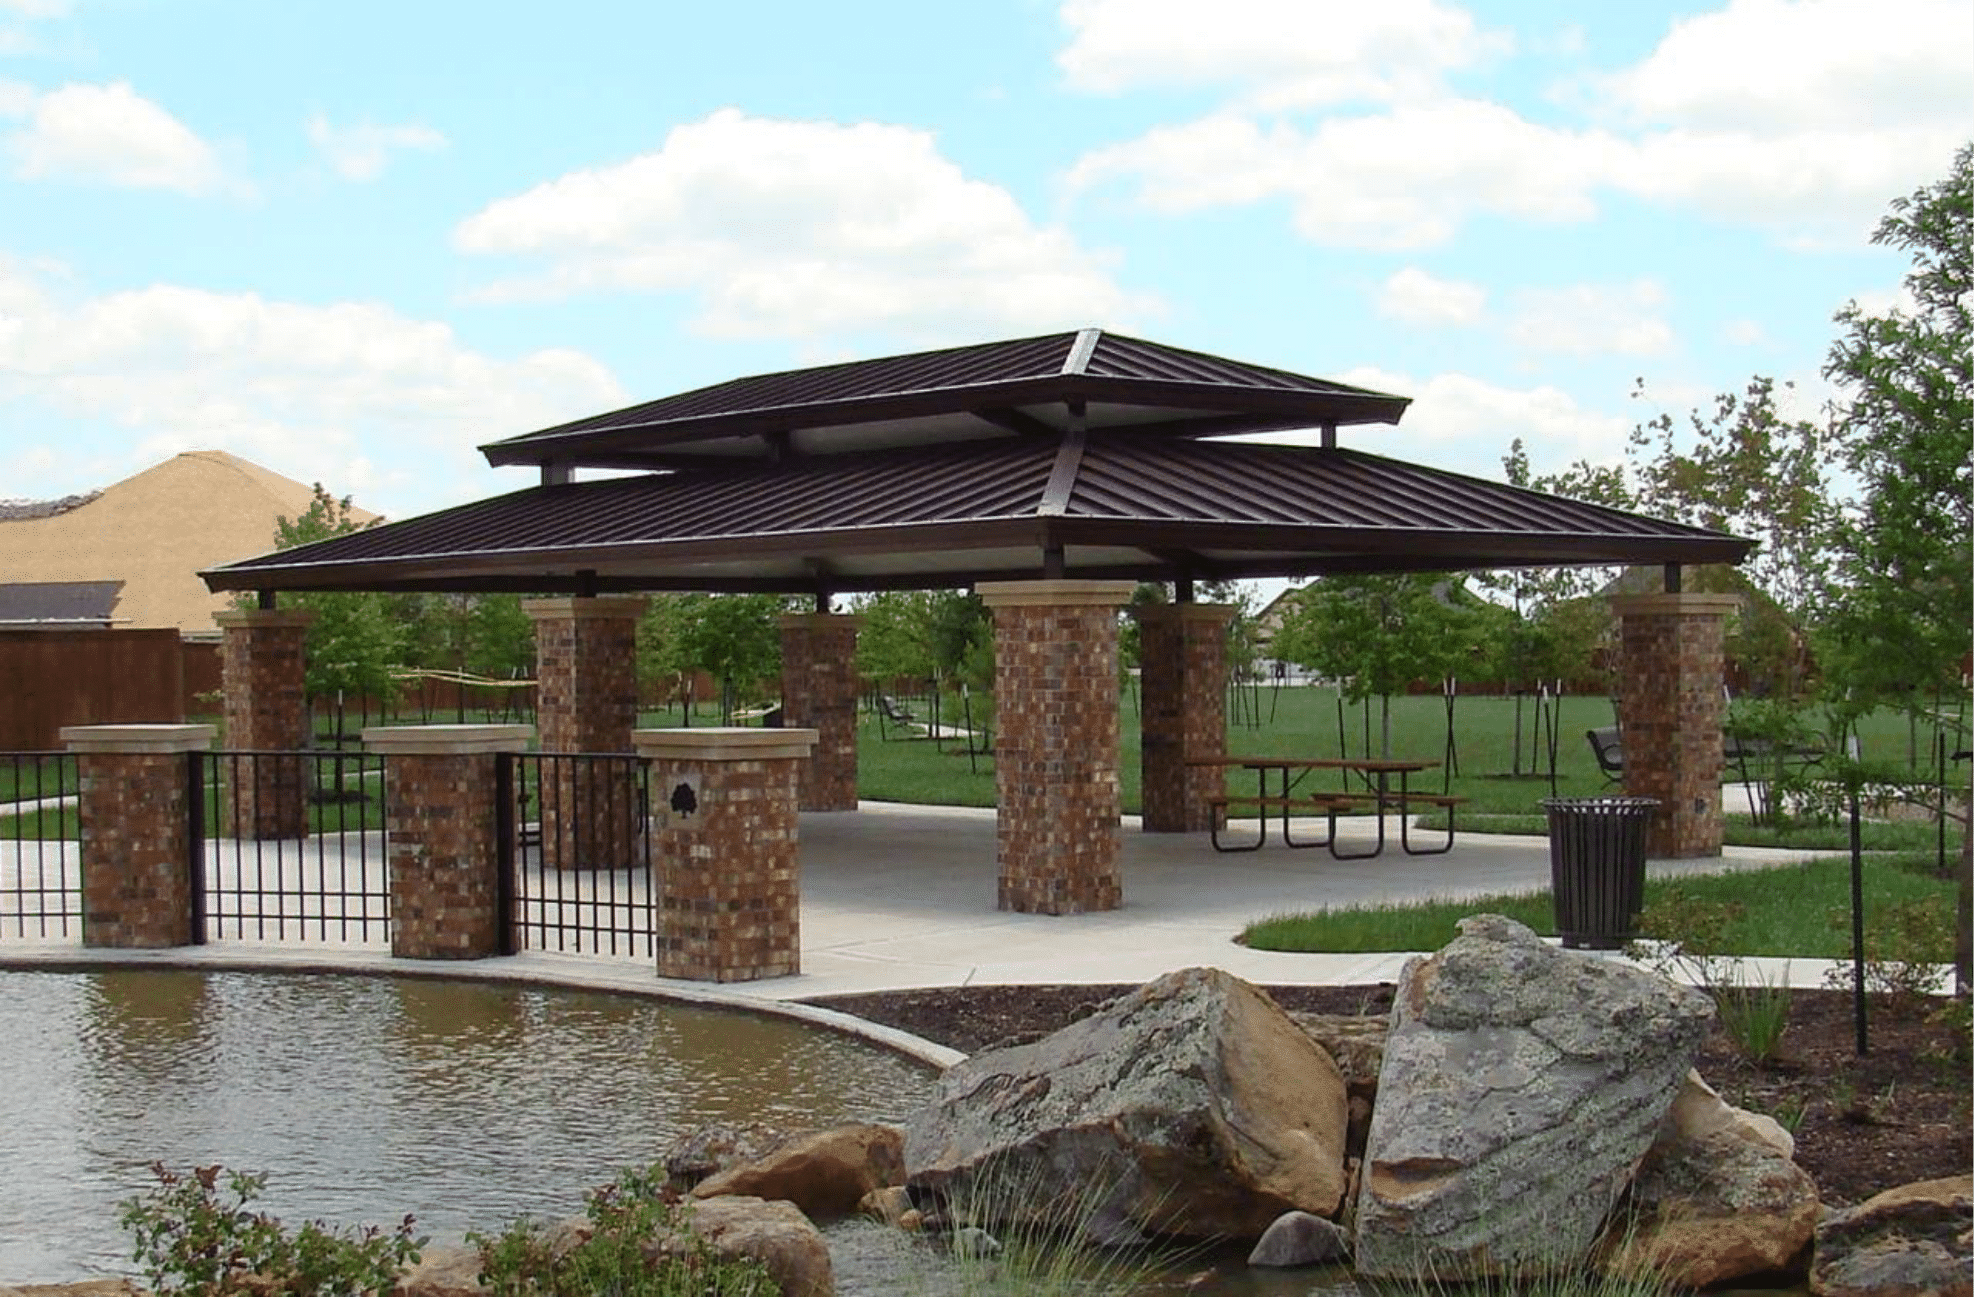 Outdoor photo of a park pavilion.